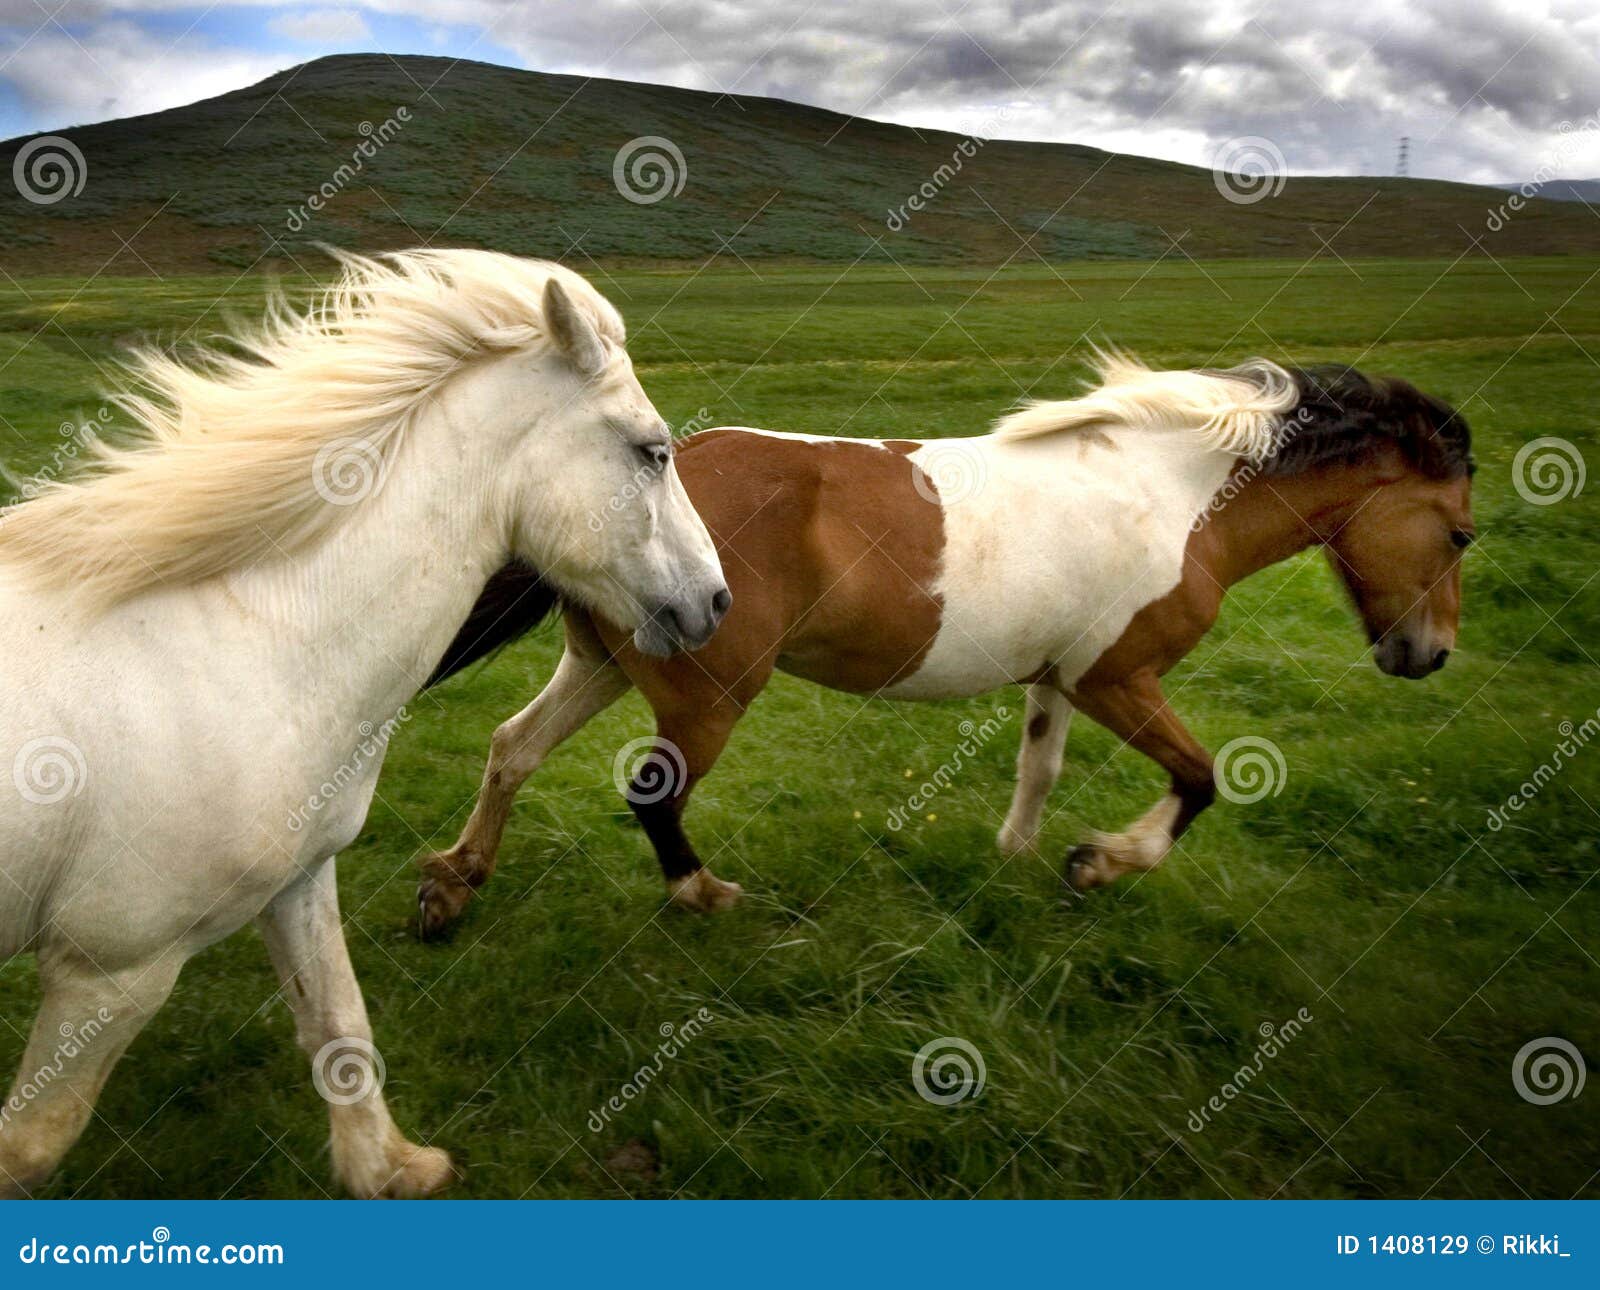 wild horses